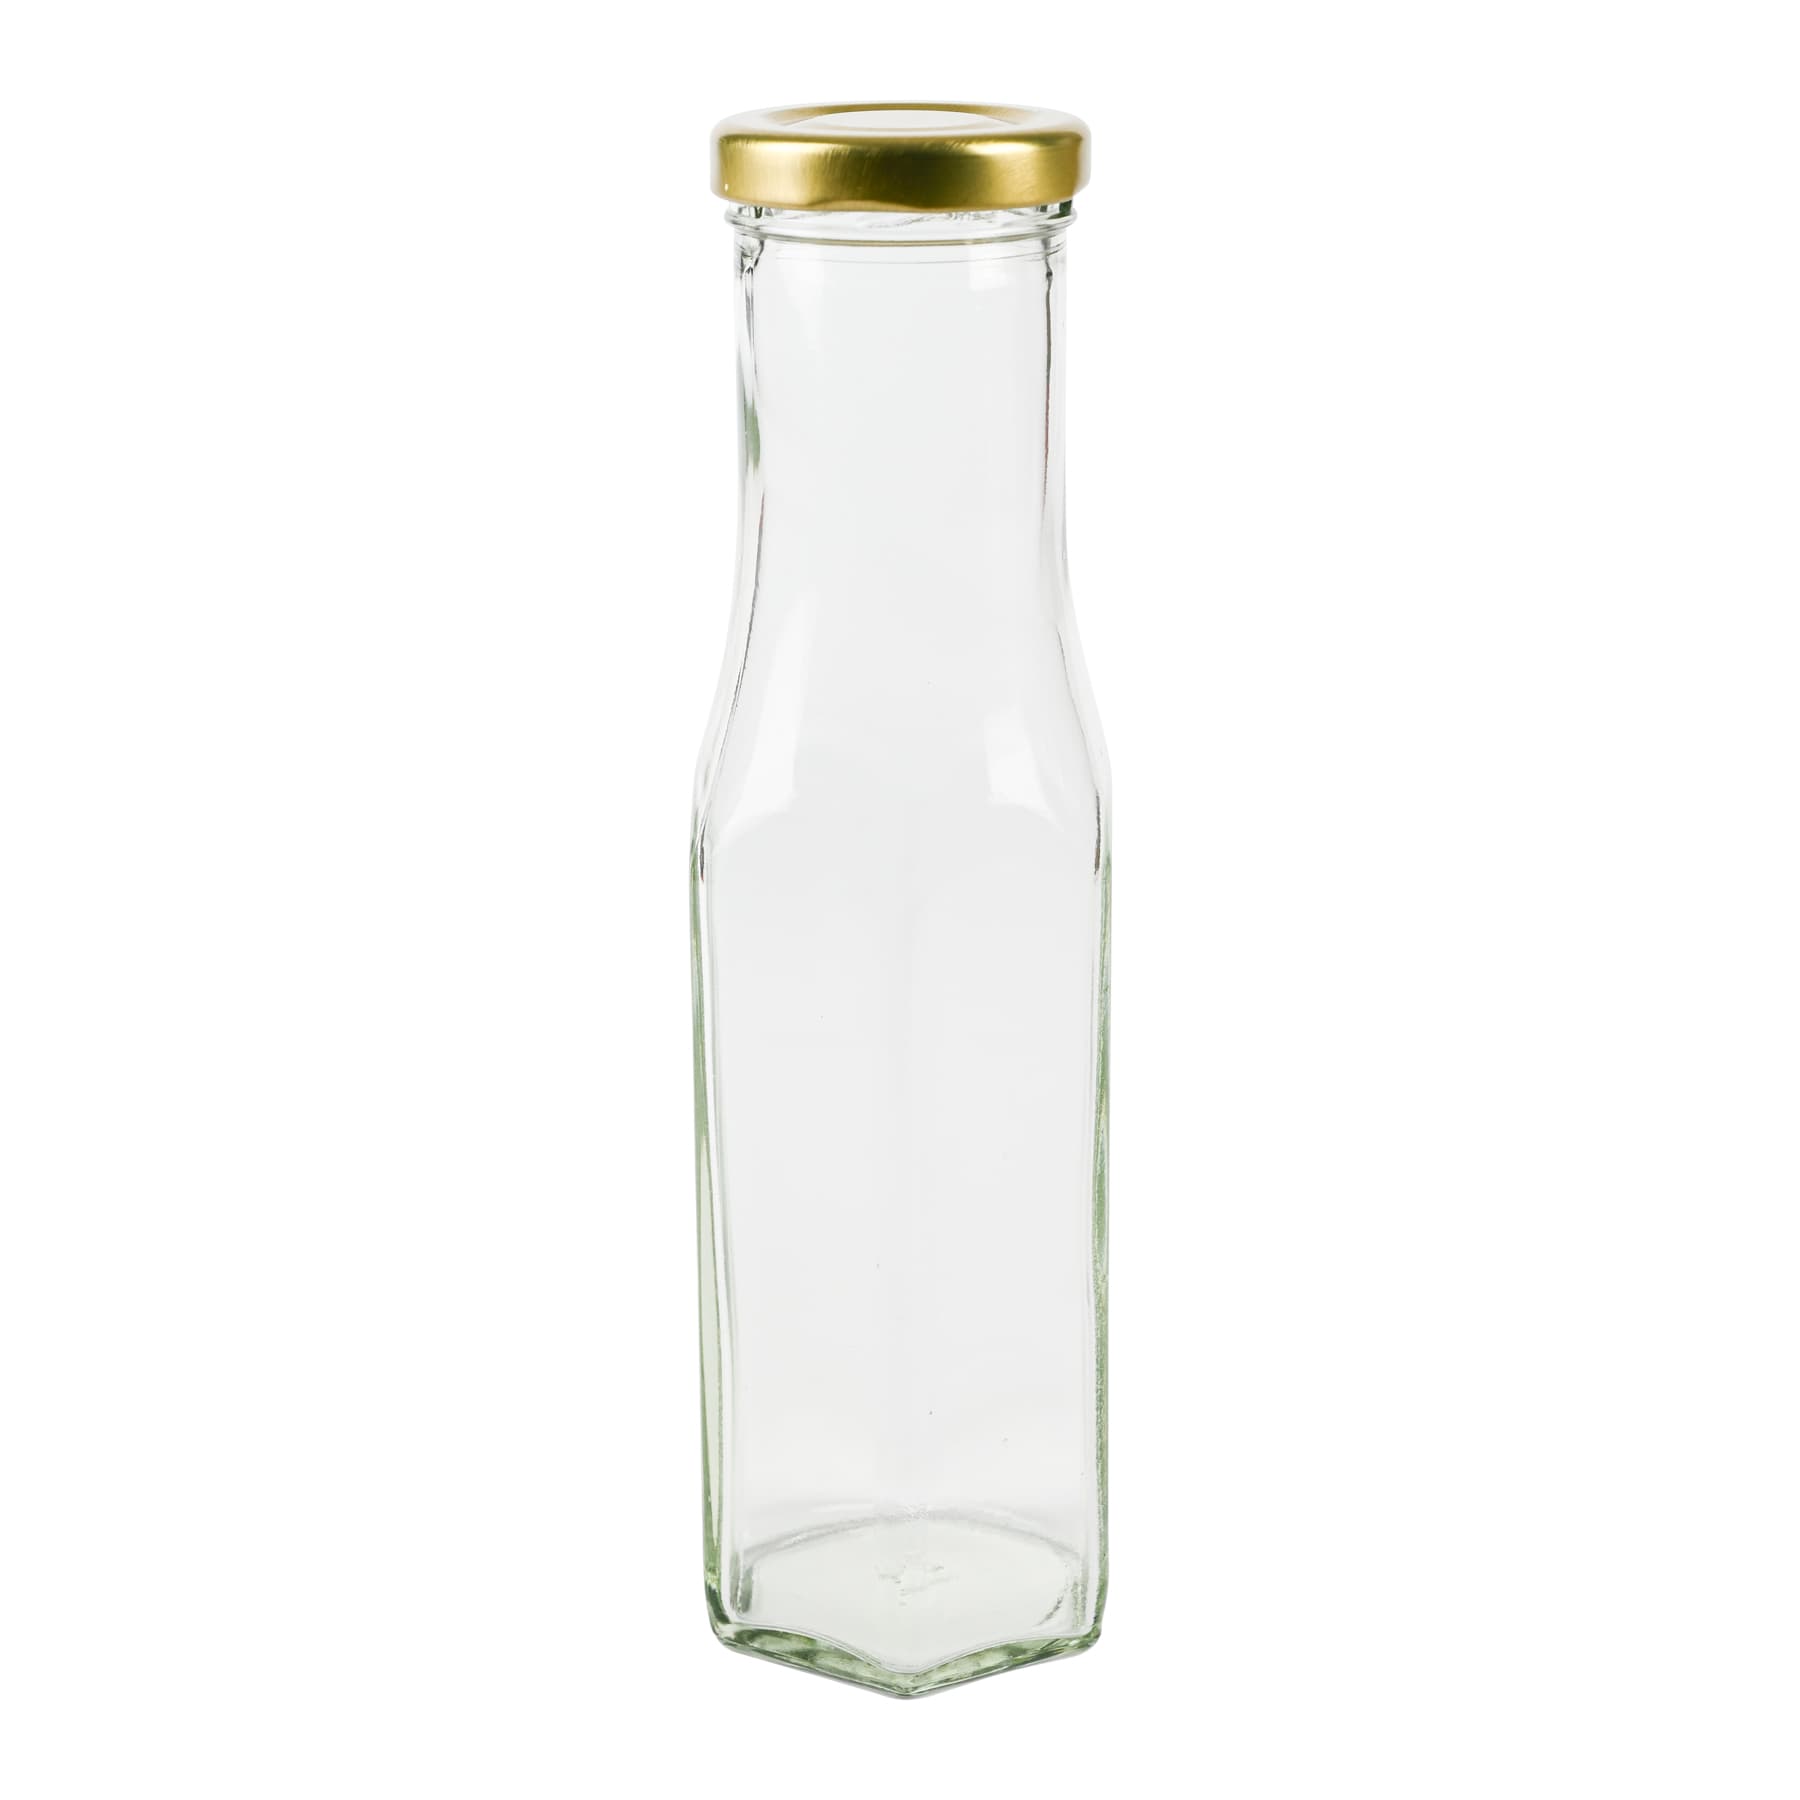 Hexagonalflasche 250 ml weiß (transparent) mit 43 T0 Deckel gold